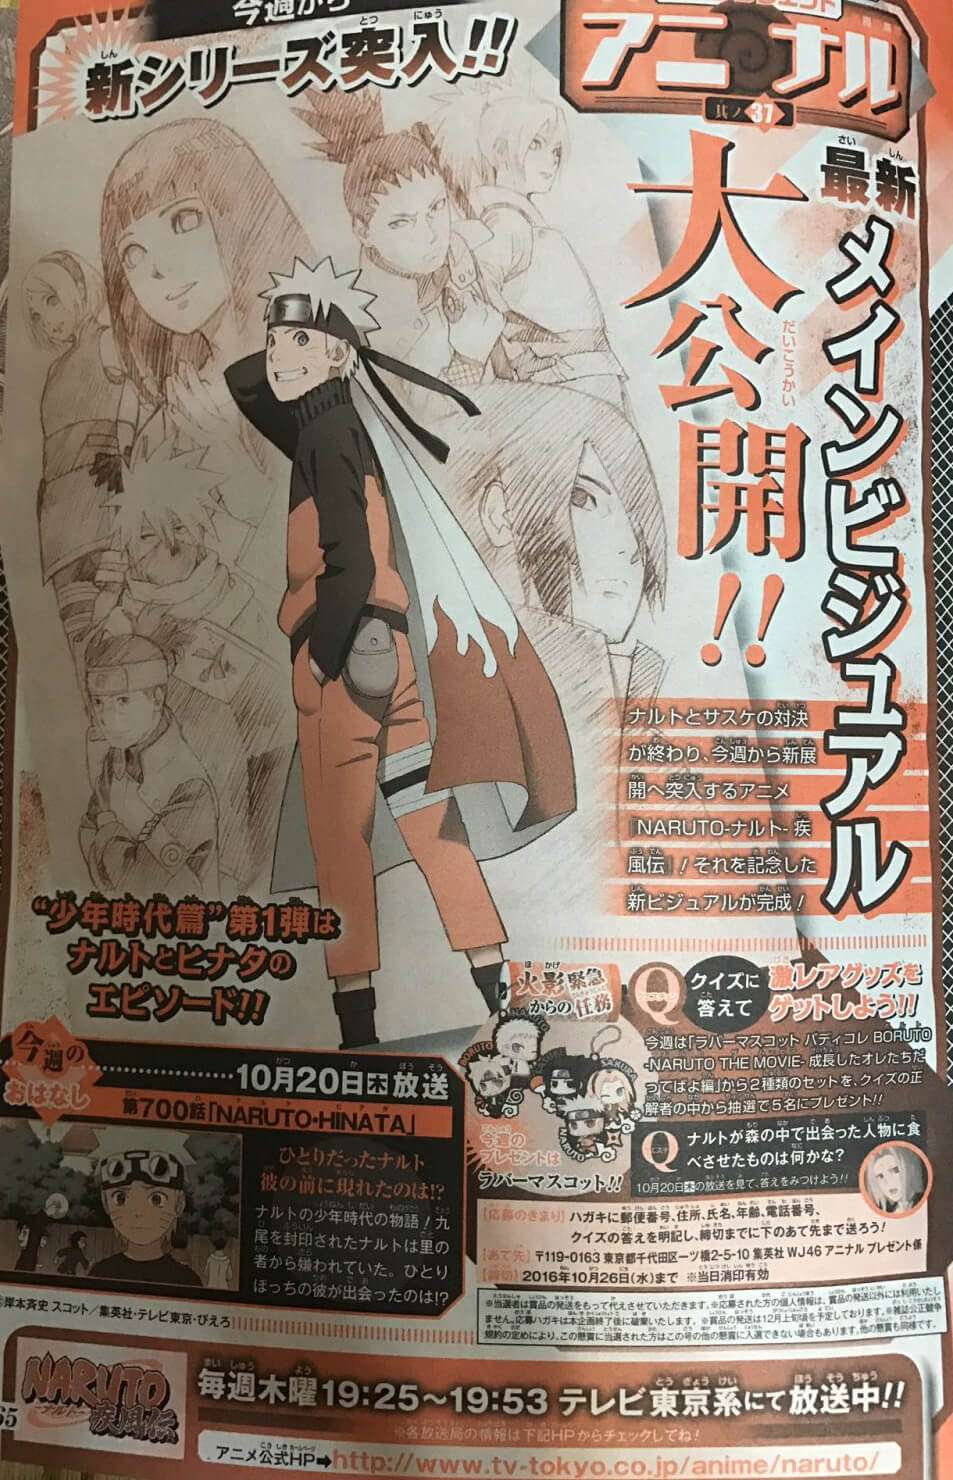 Naruto Shippuden estreia Boyhood Arc em Outubro